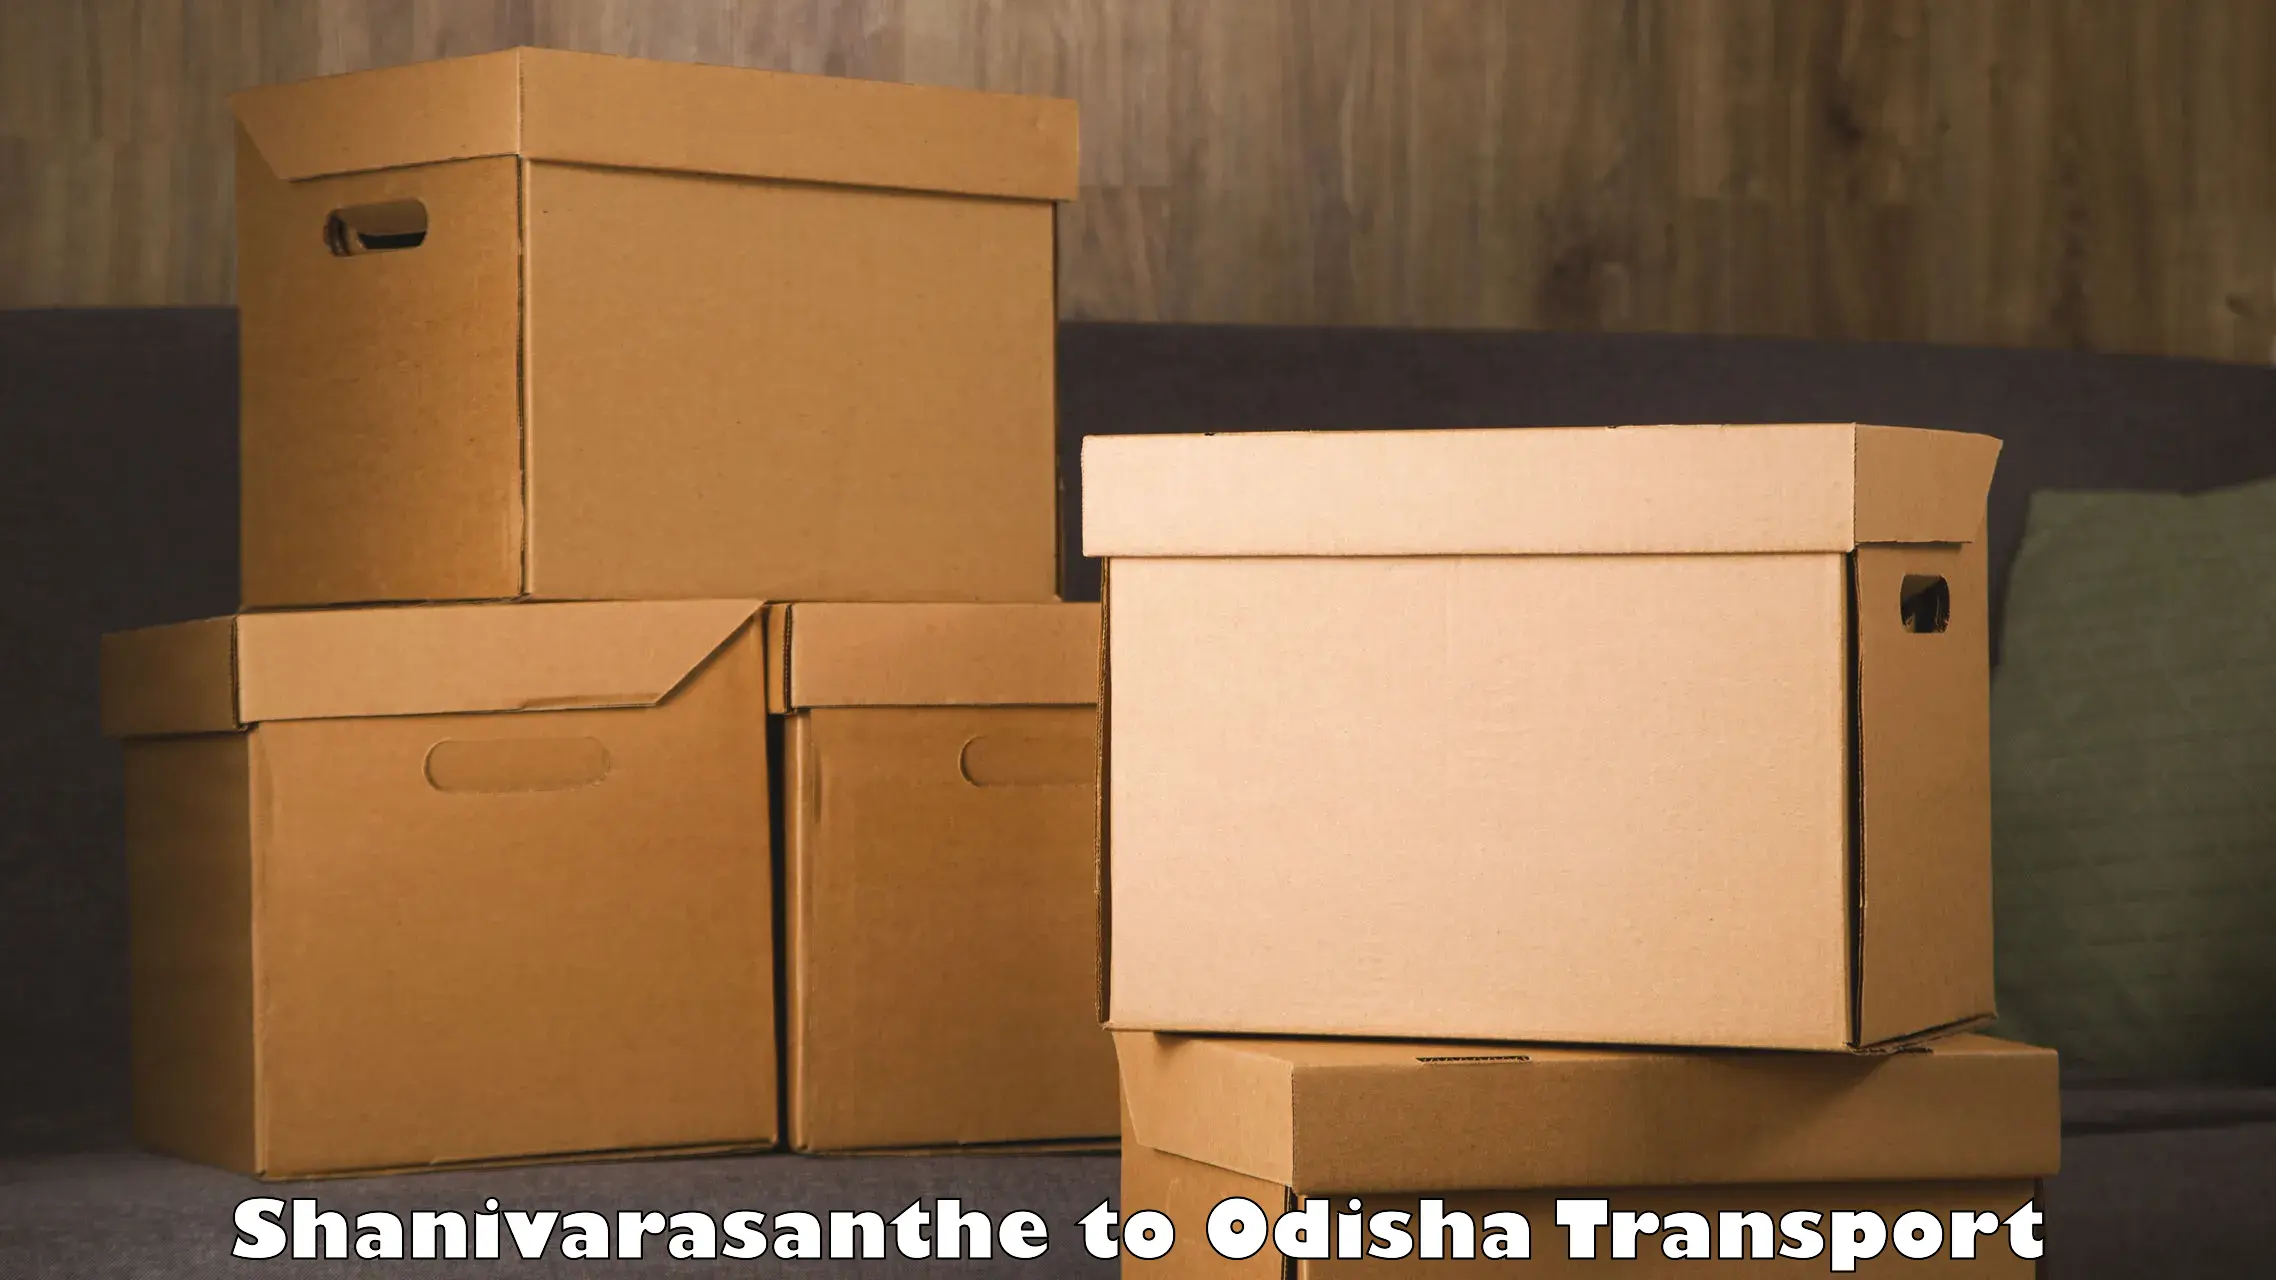 Transport in sharing Shanivarasanthe to Swampatna